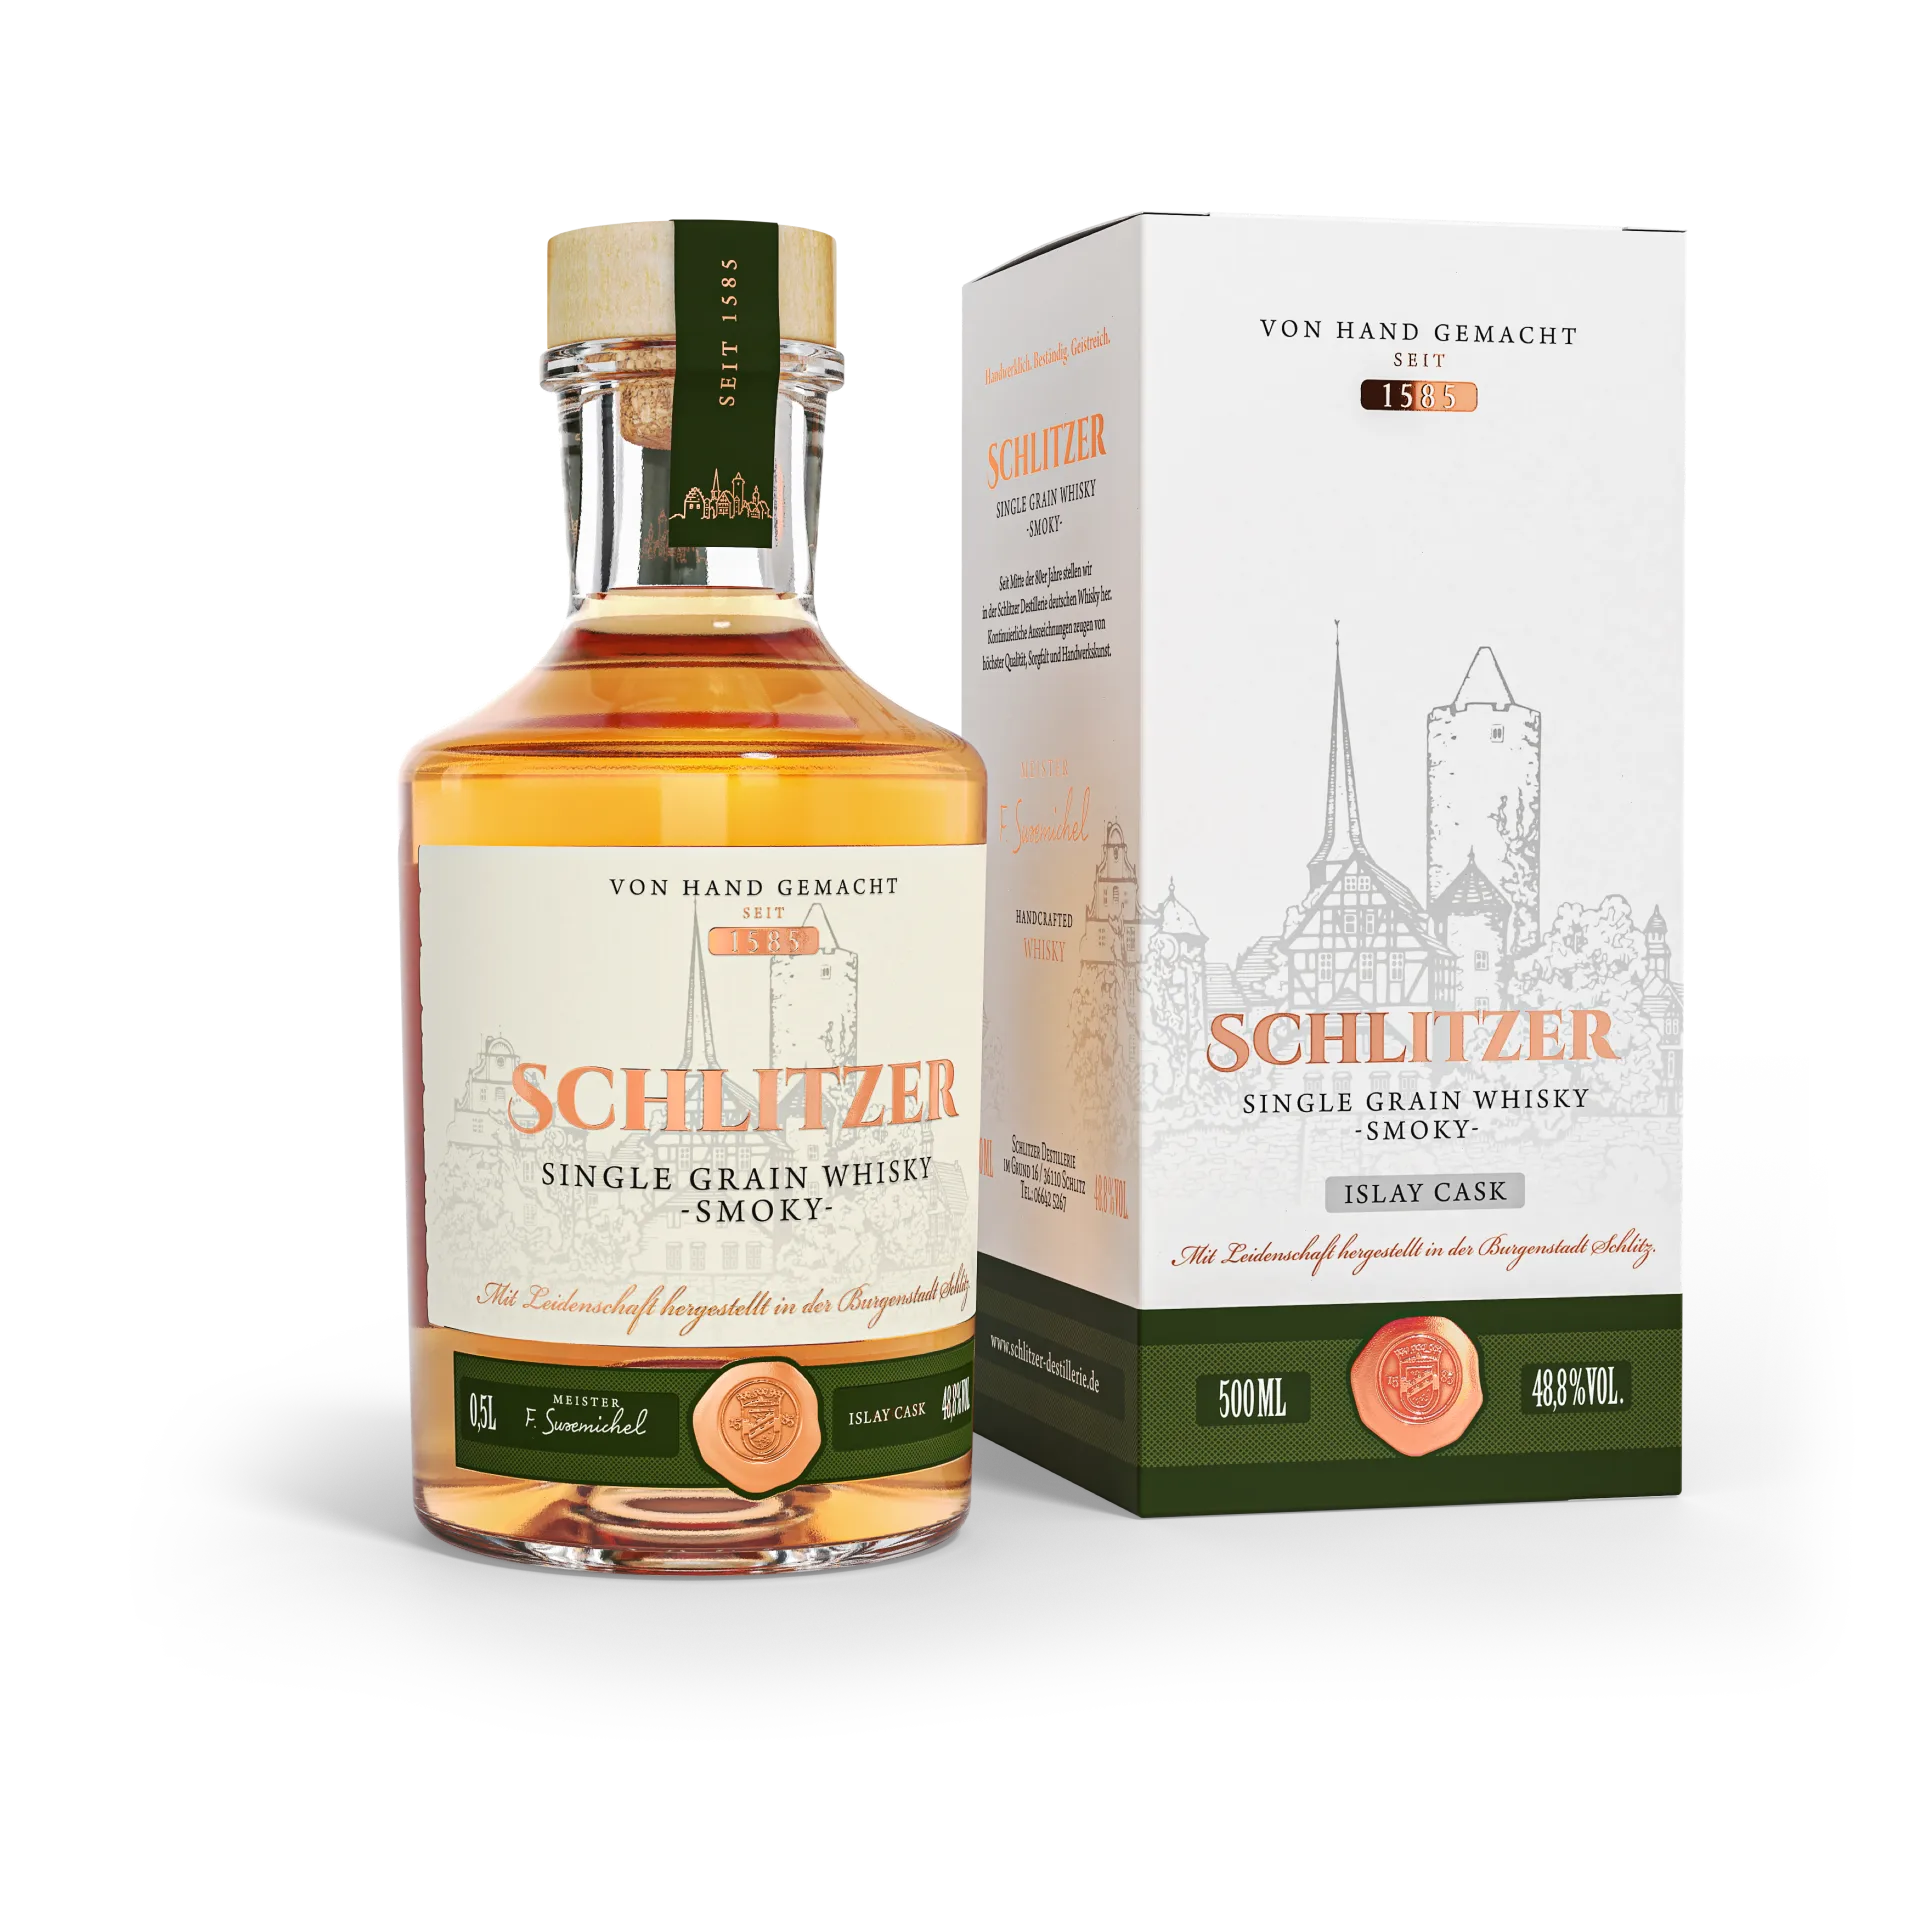 Single Grain Whisky smoky 48,8%vol. in einer 0,5 Liter Glasflasche mit Holzgriffkorken inkl. Geschenkverpackung, Karton